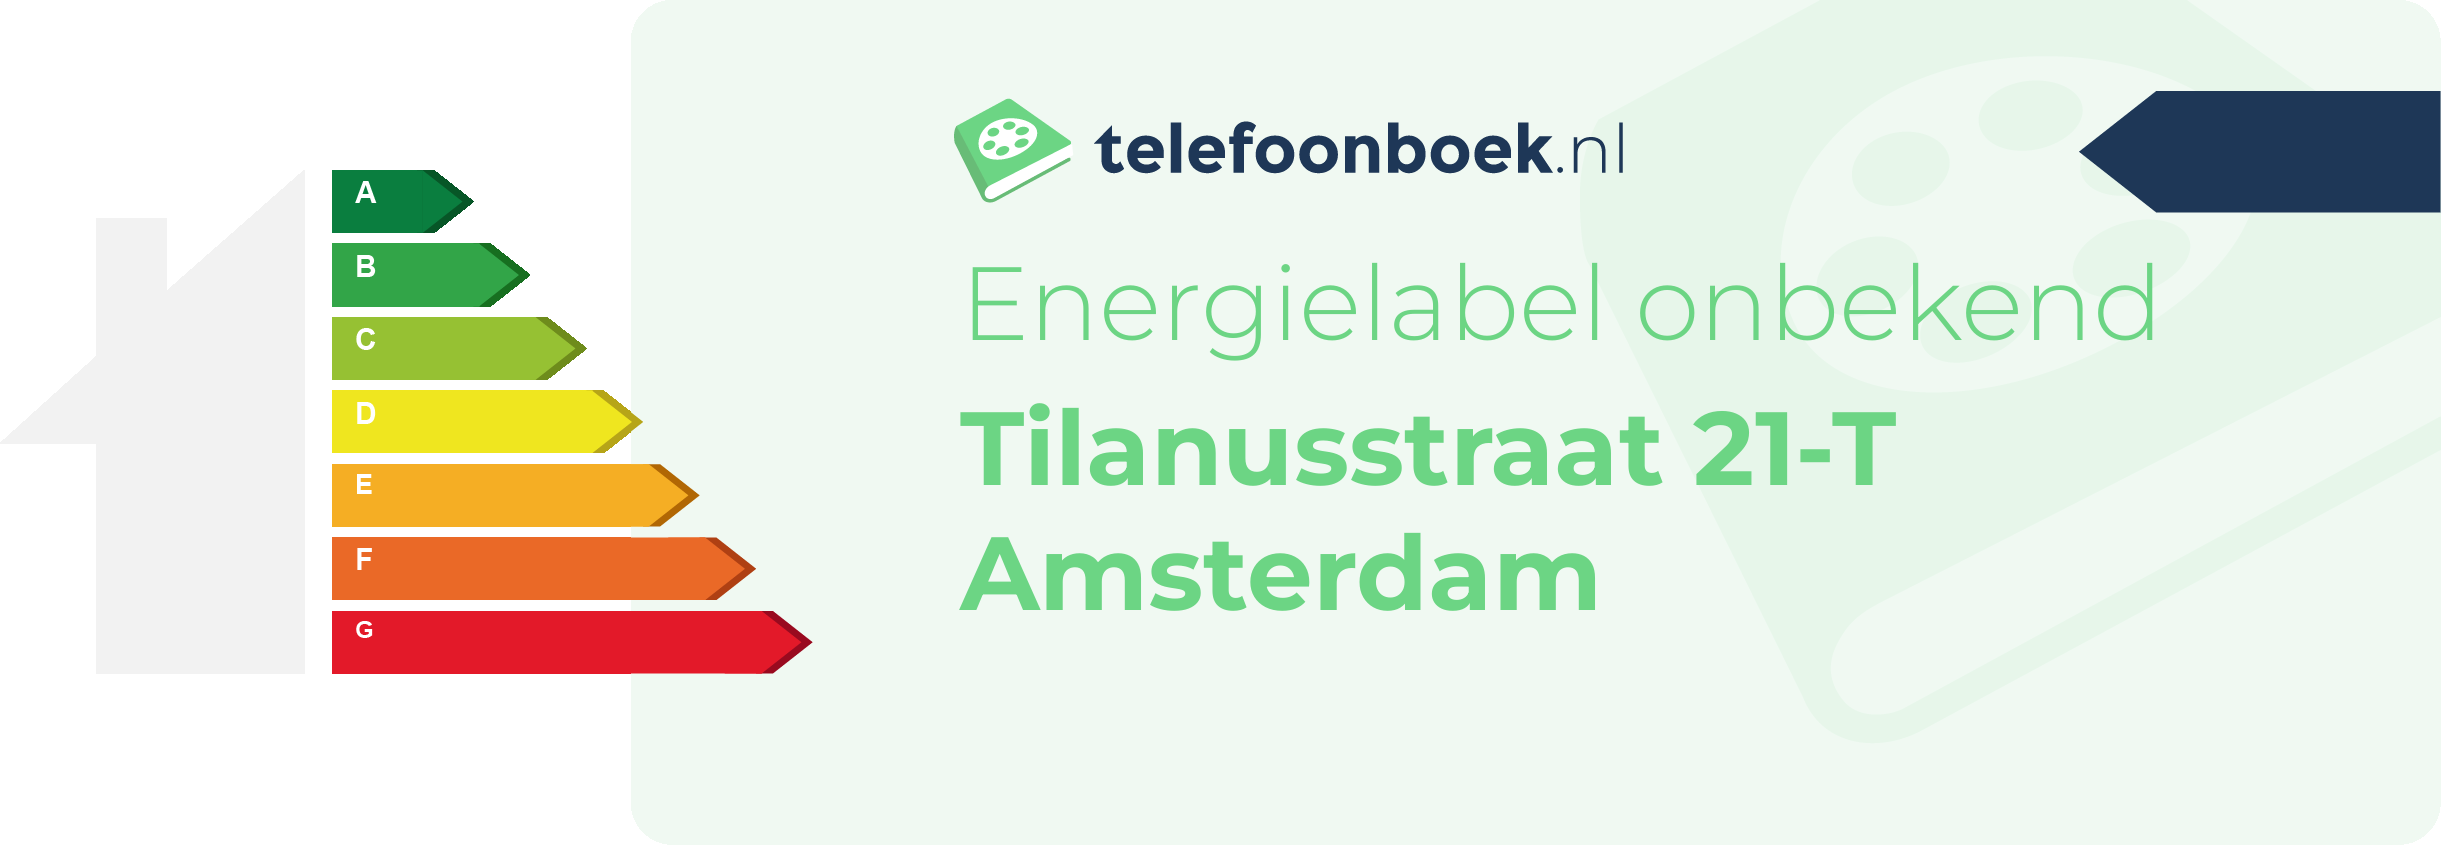 Energielabel Tilanusstraat 21-T Amsterdam